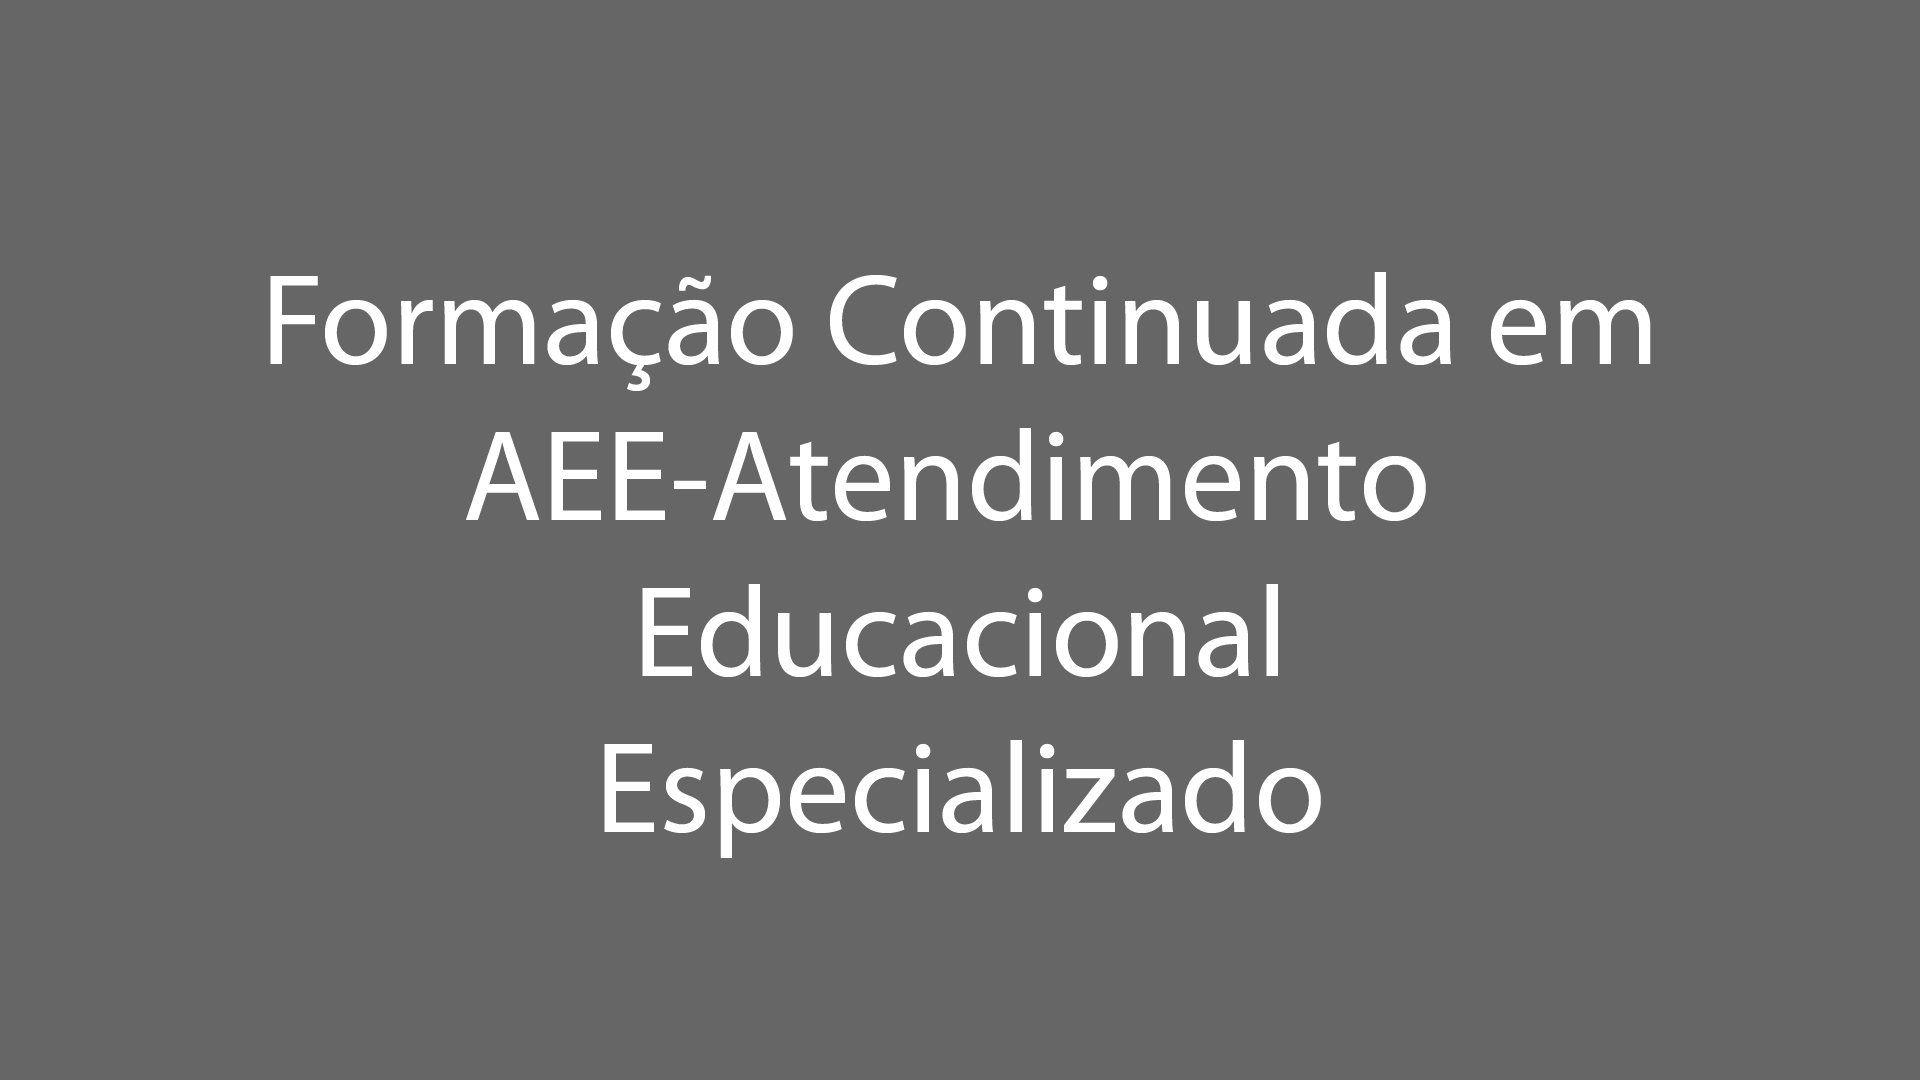 Formação Continuada Em AEE - Atendimento Educacional Especializado 2019/2